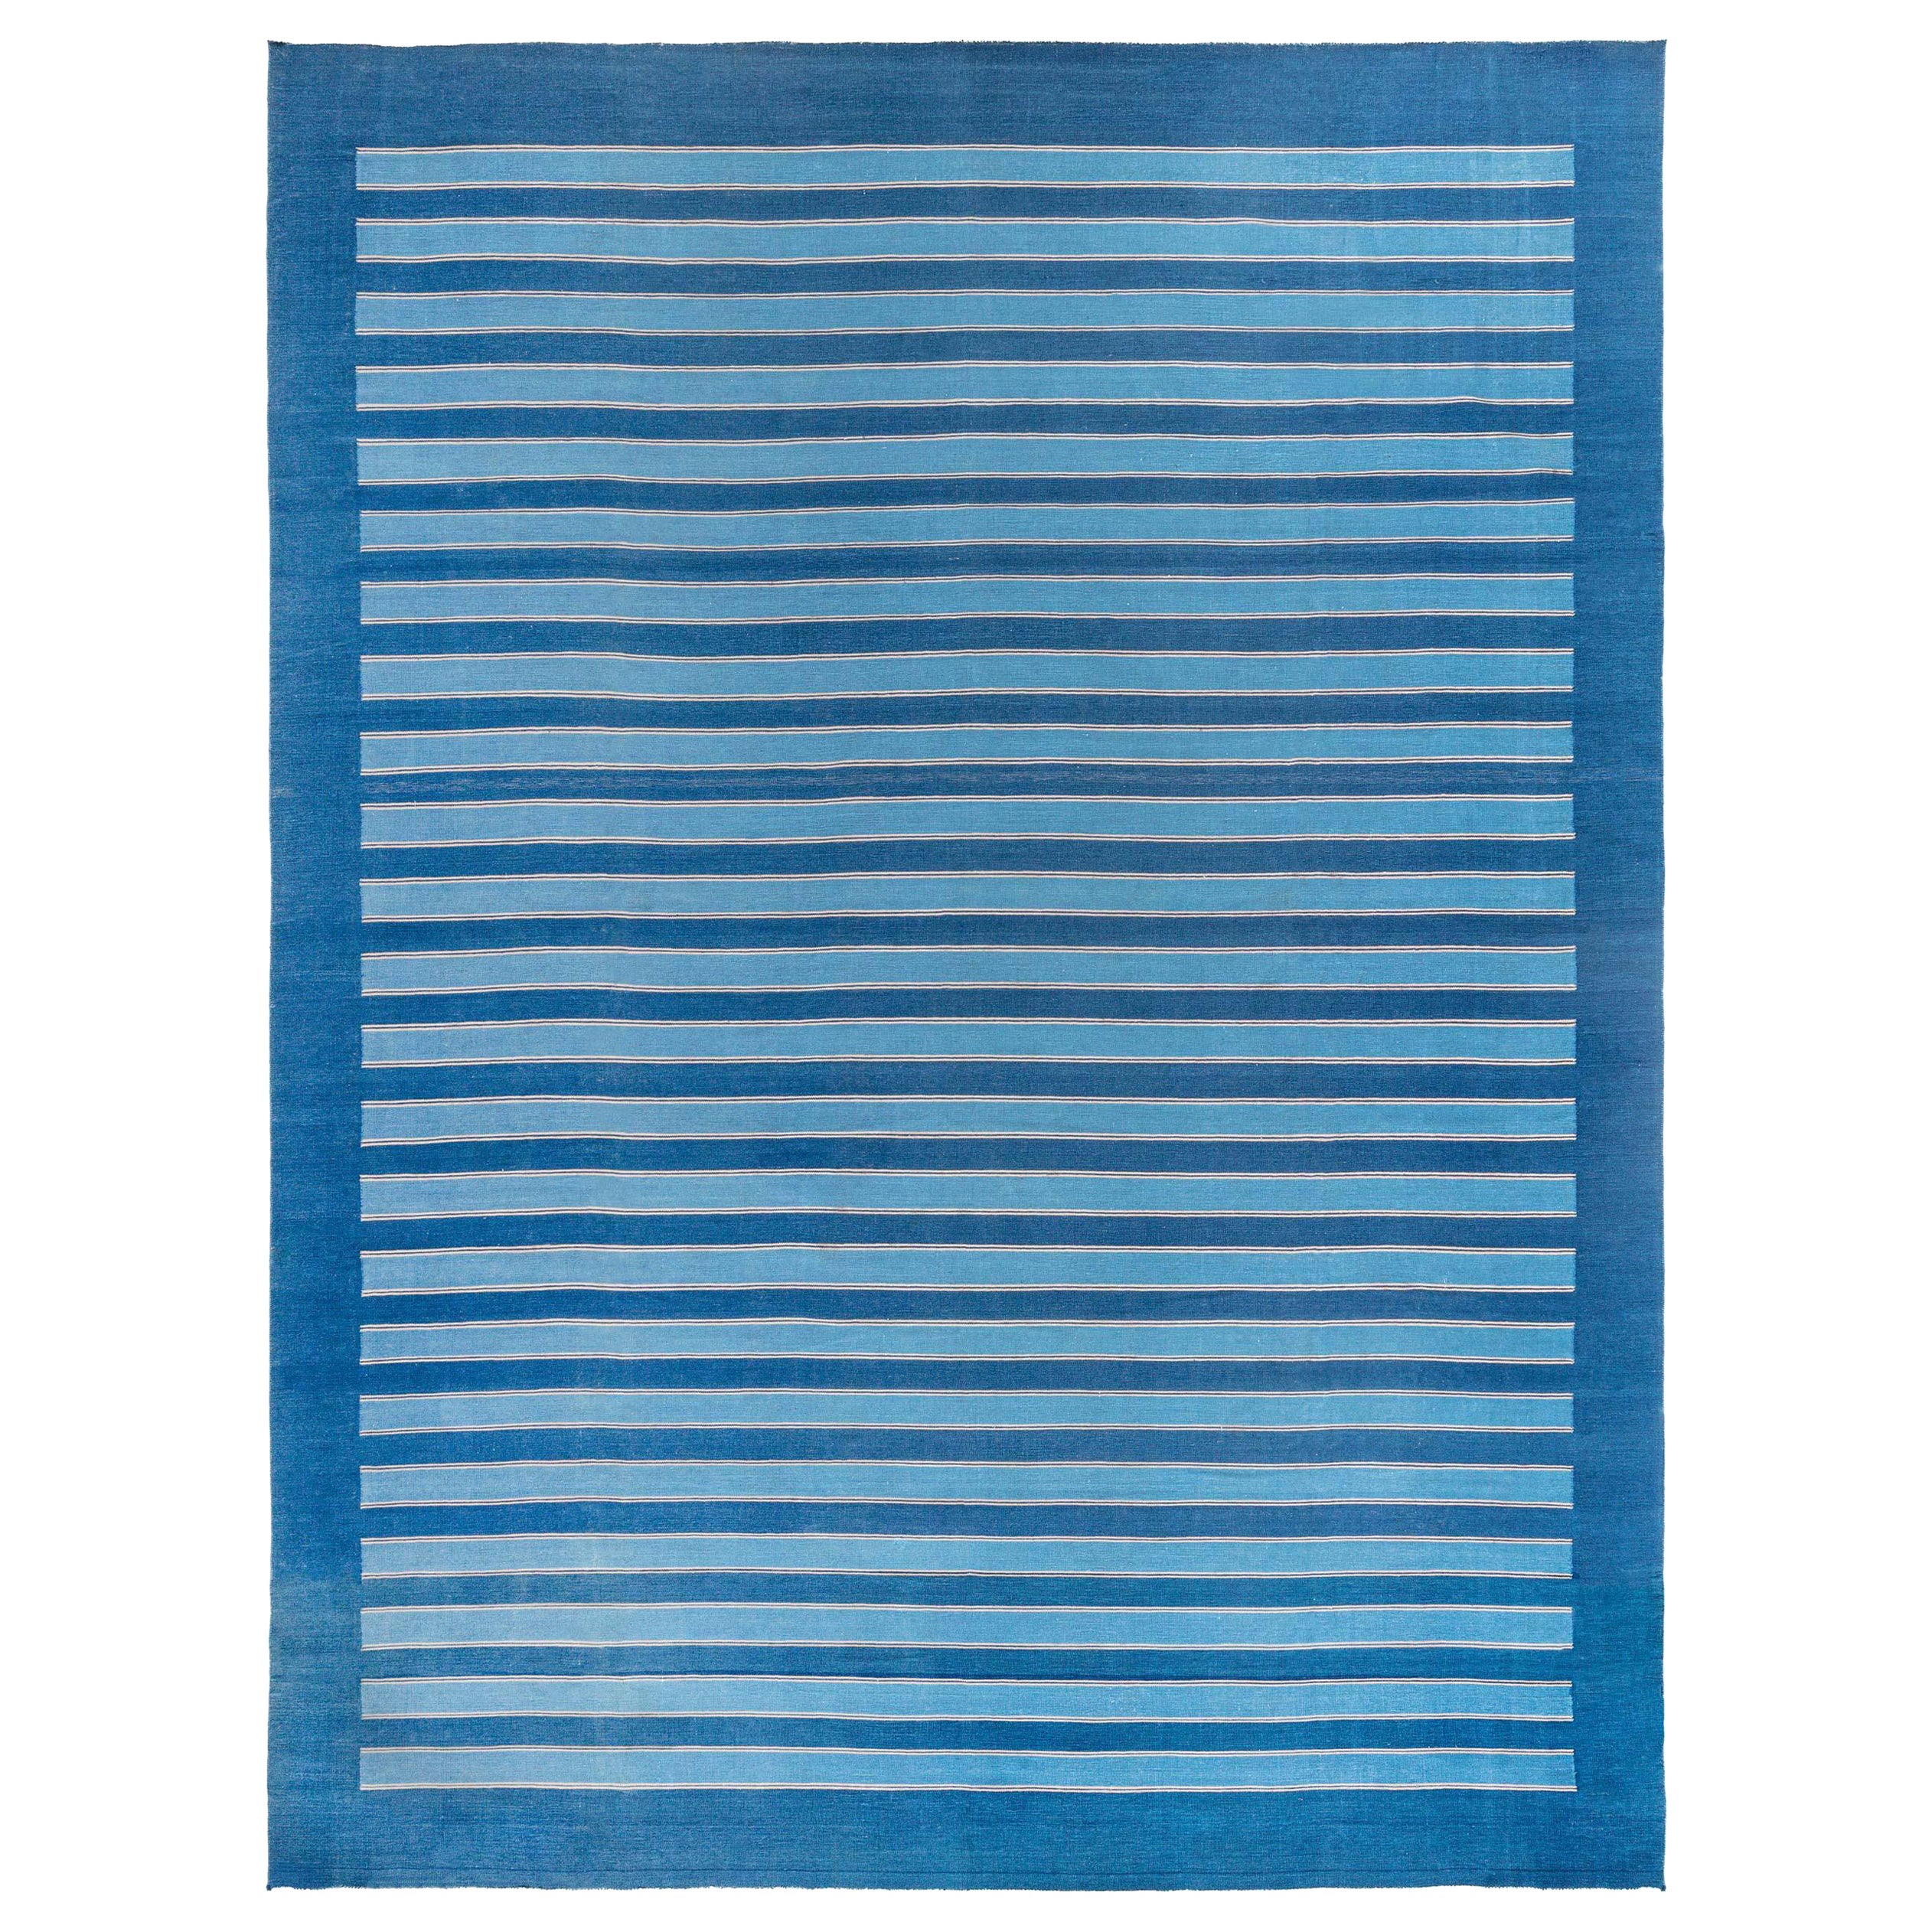 Vintage Indian Dhurrie Striped Blue Beige Rug For Sale